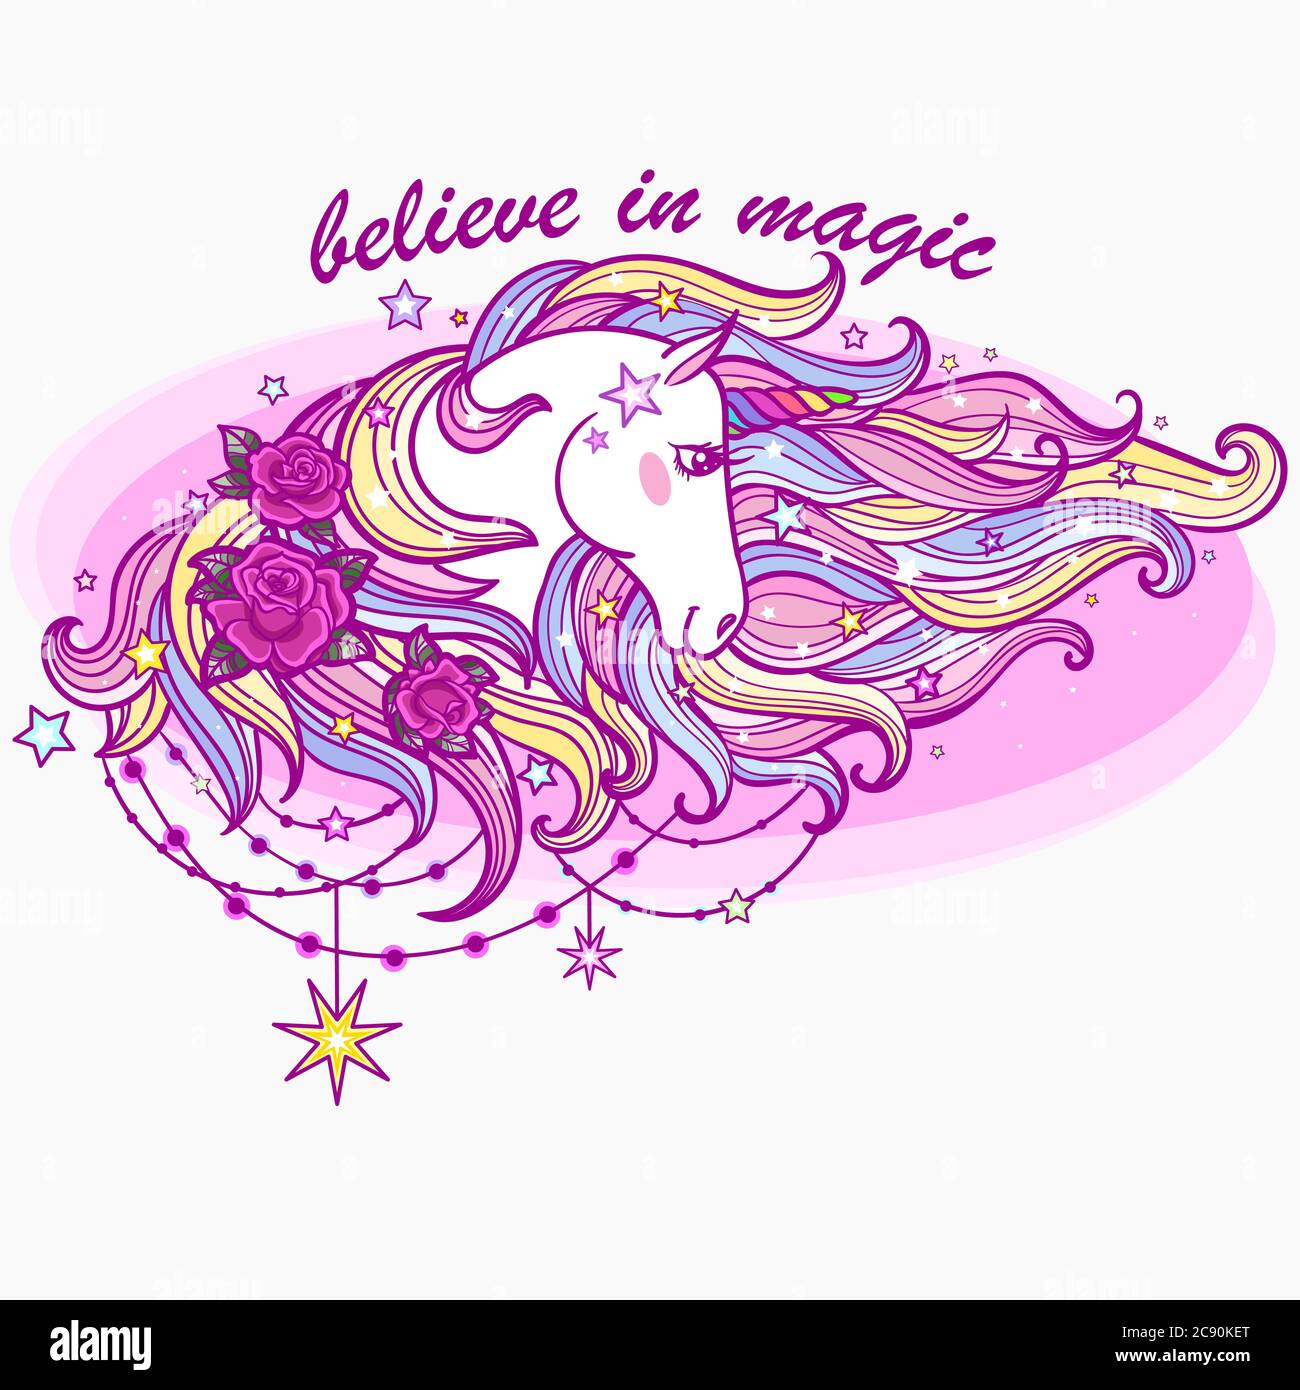 Je crois en la magie. Une licorne blanche avec une forme arc-en-ciel. Animal fantaisie. Pour la conception de pompons, autocollants, imprimés, tatouages, etc. Vecteur Illustration de Vecteur